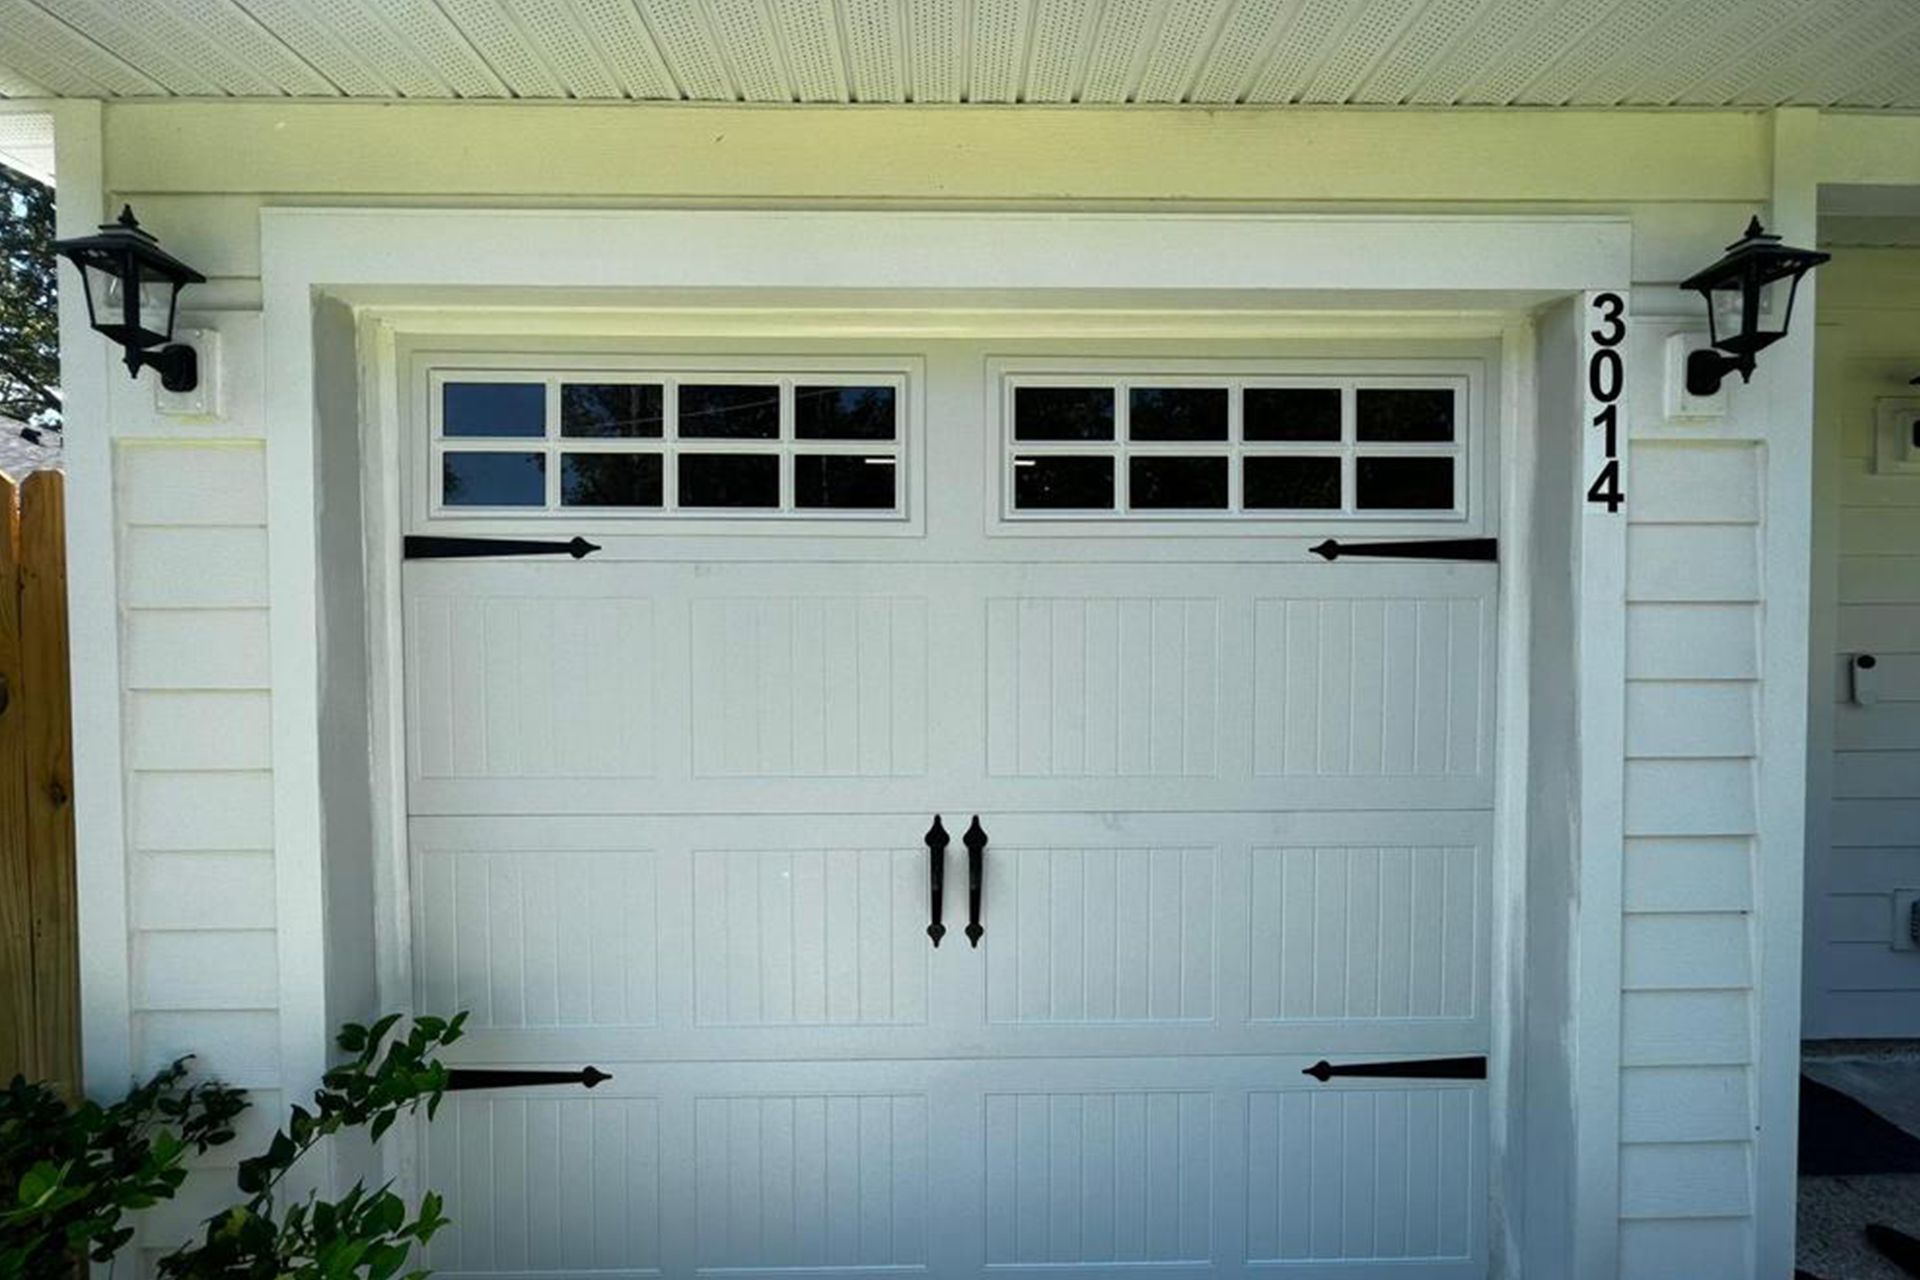 Garage Door Security